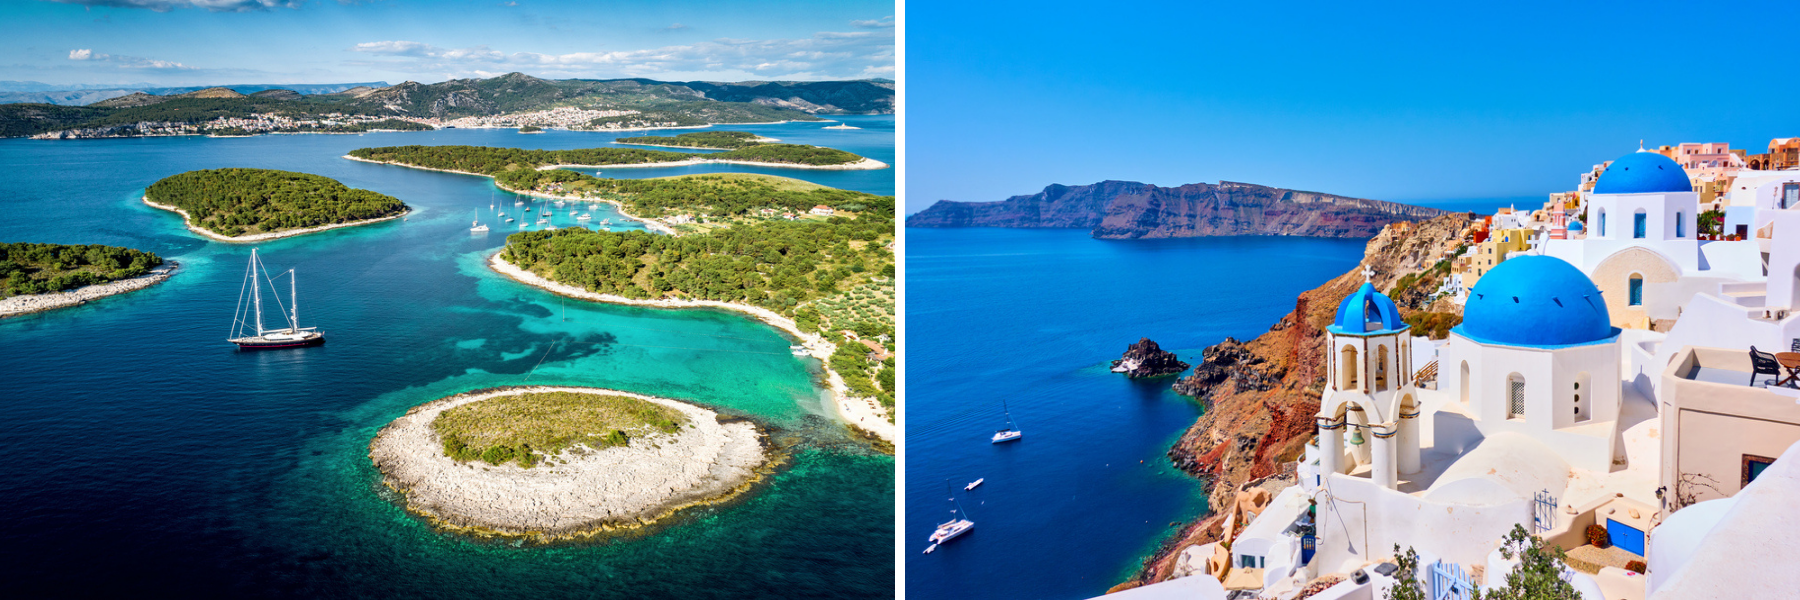 La Croazia e la Grecia sono paesi insulari.